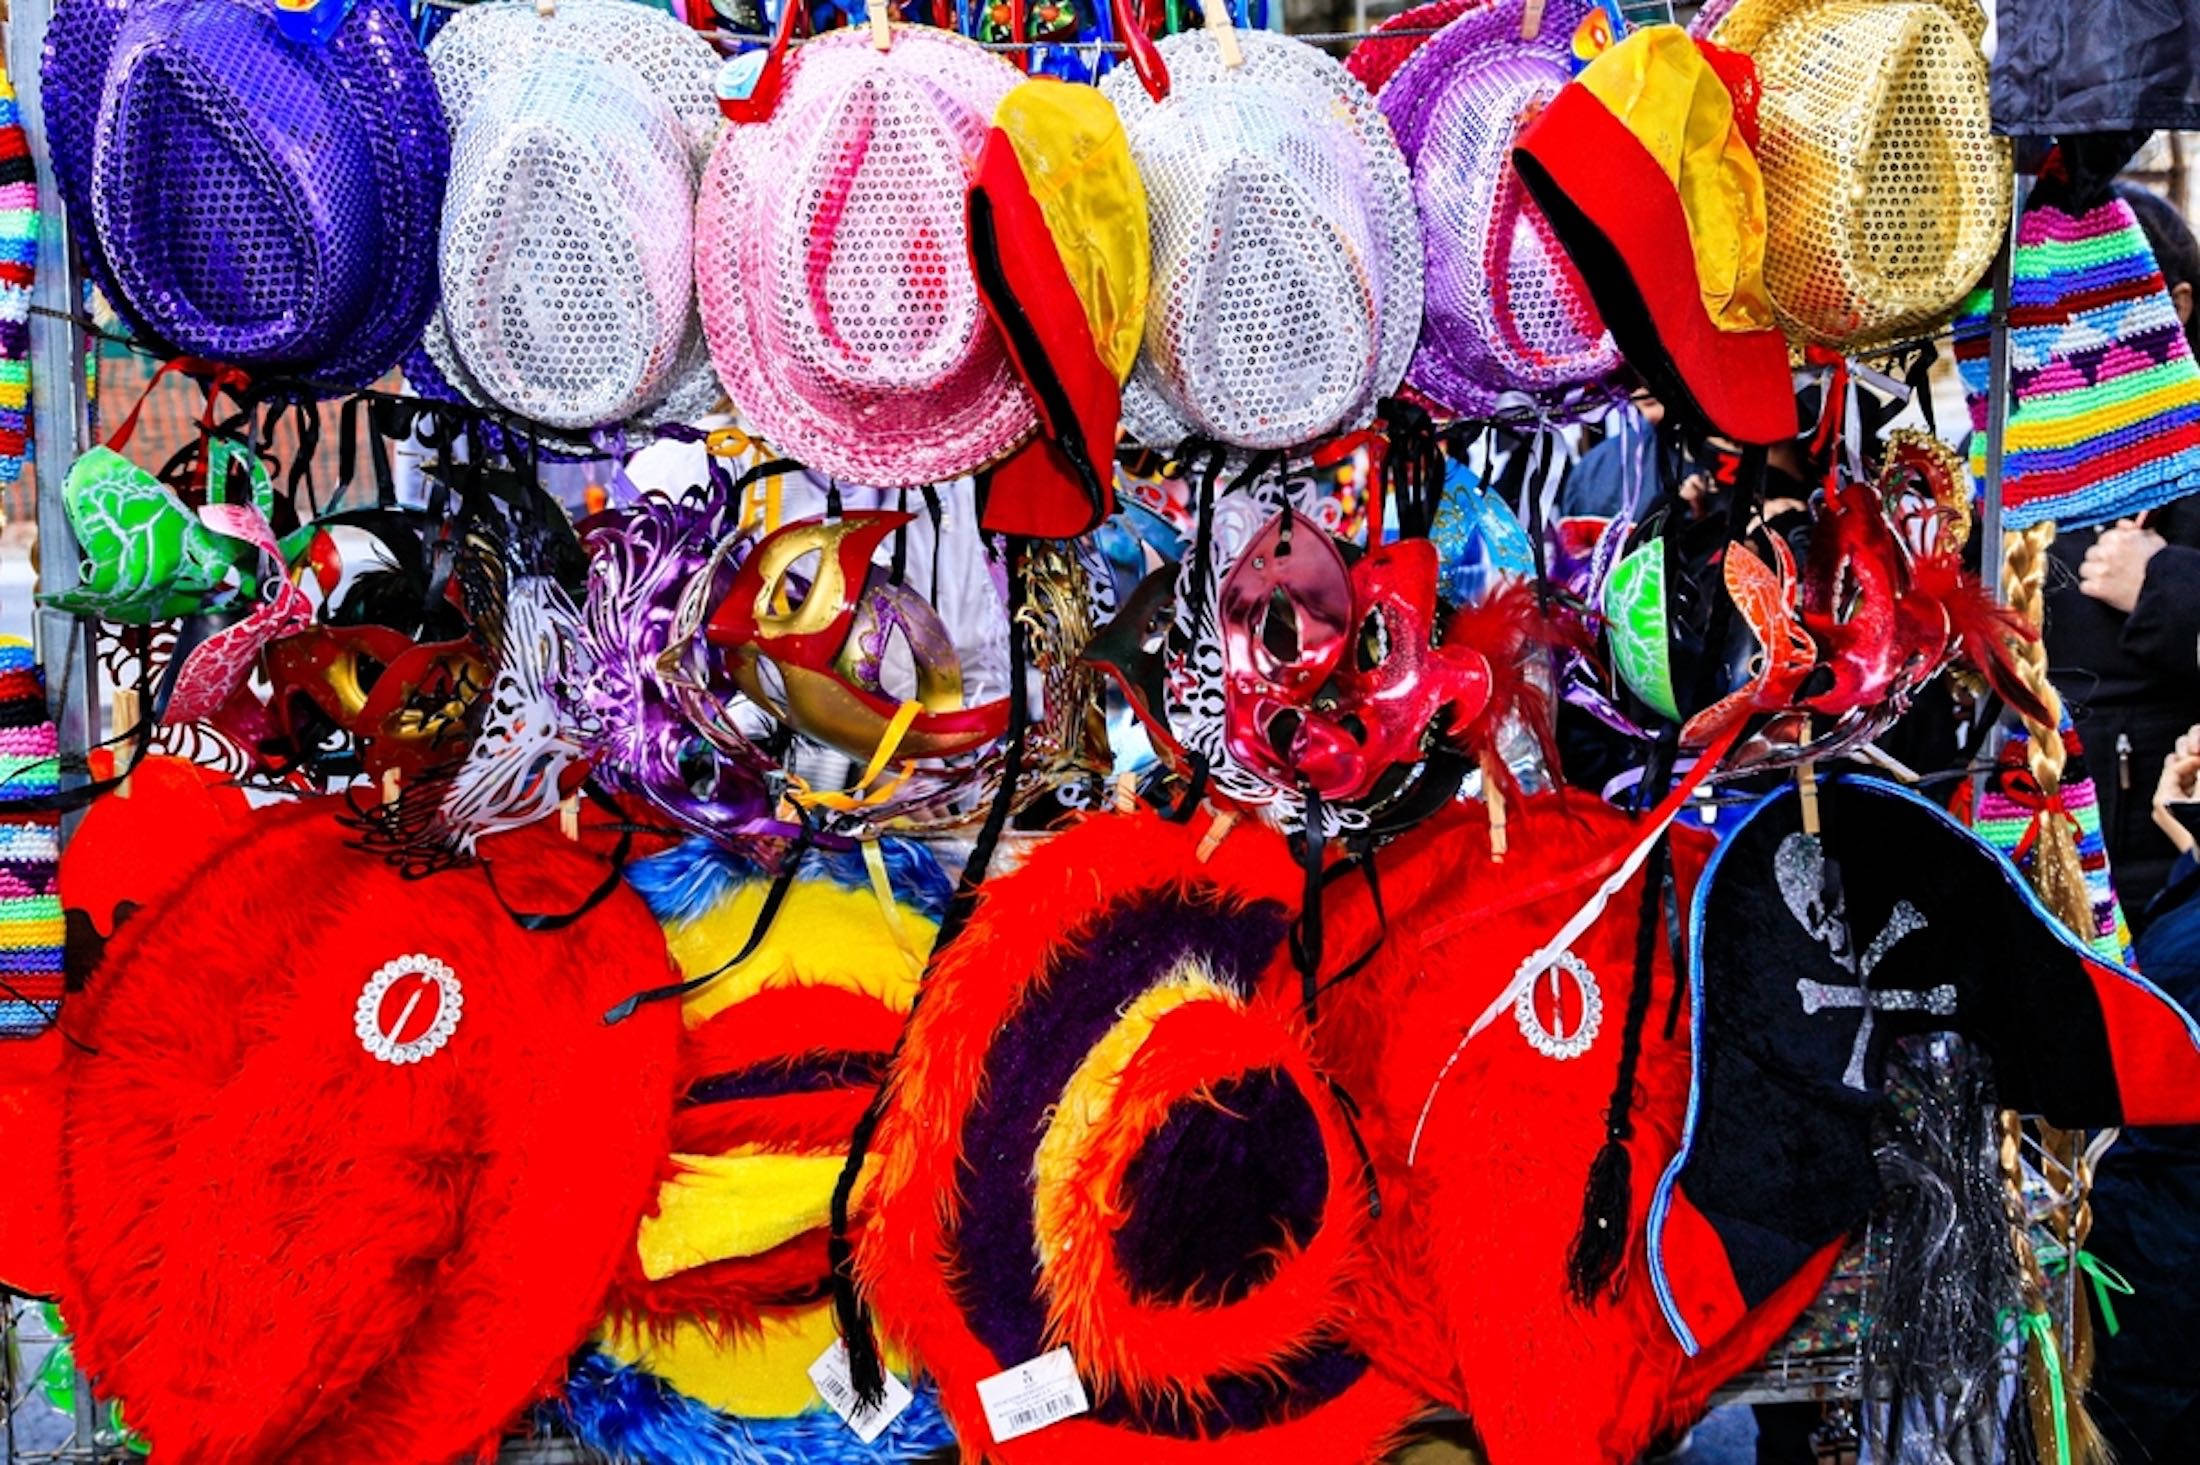 Γιορτάζοντας την παράδοση και τη χαρά: Η μαγευτική καρναβαλική περίοδος στην Κρήτη!